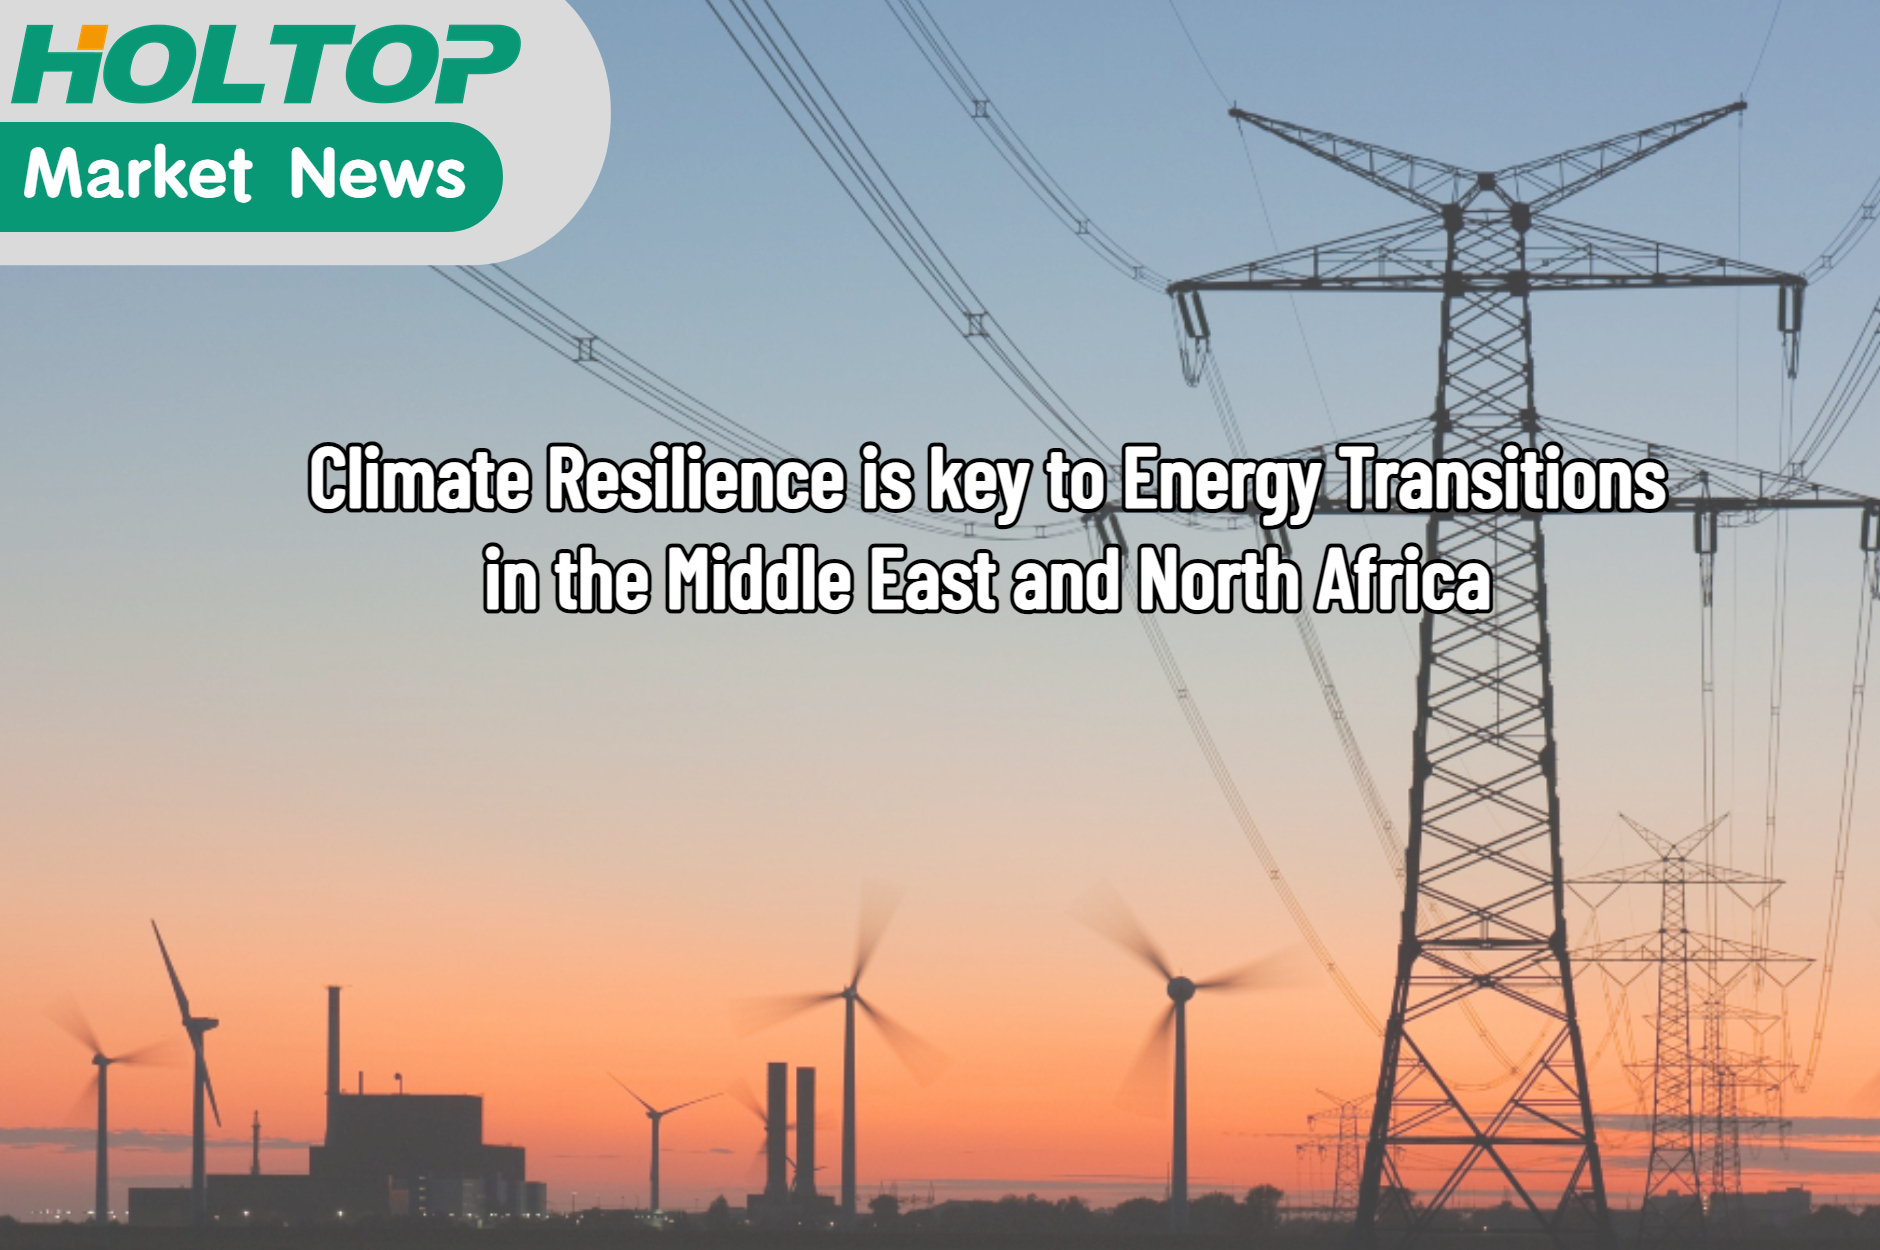 La resilienza climatica è fondamentale per le transizioni energetiche nei paesi MENA